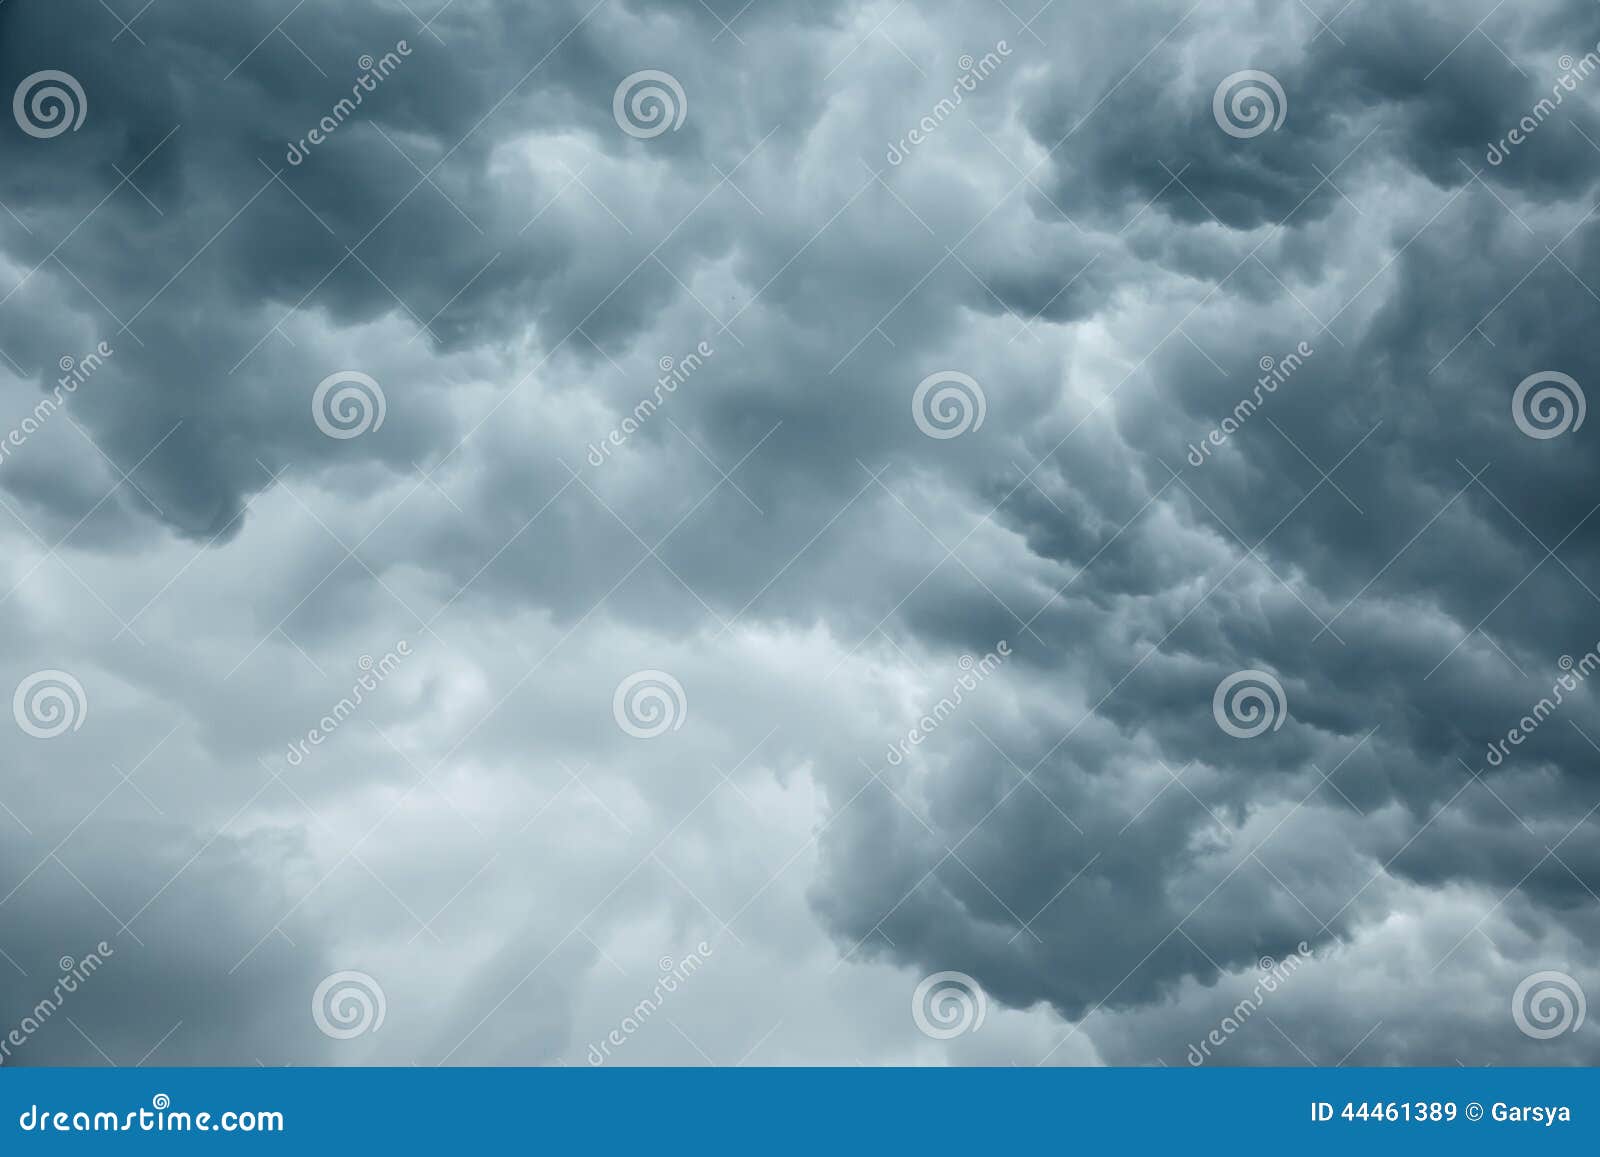 stormy grey cloudy sky